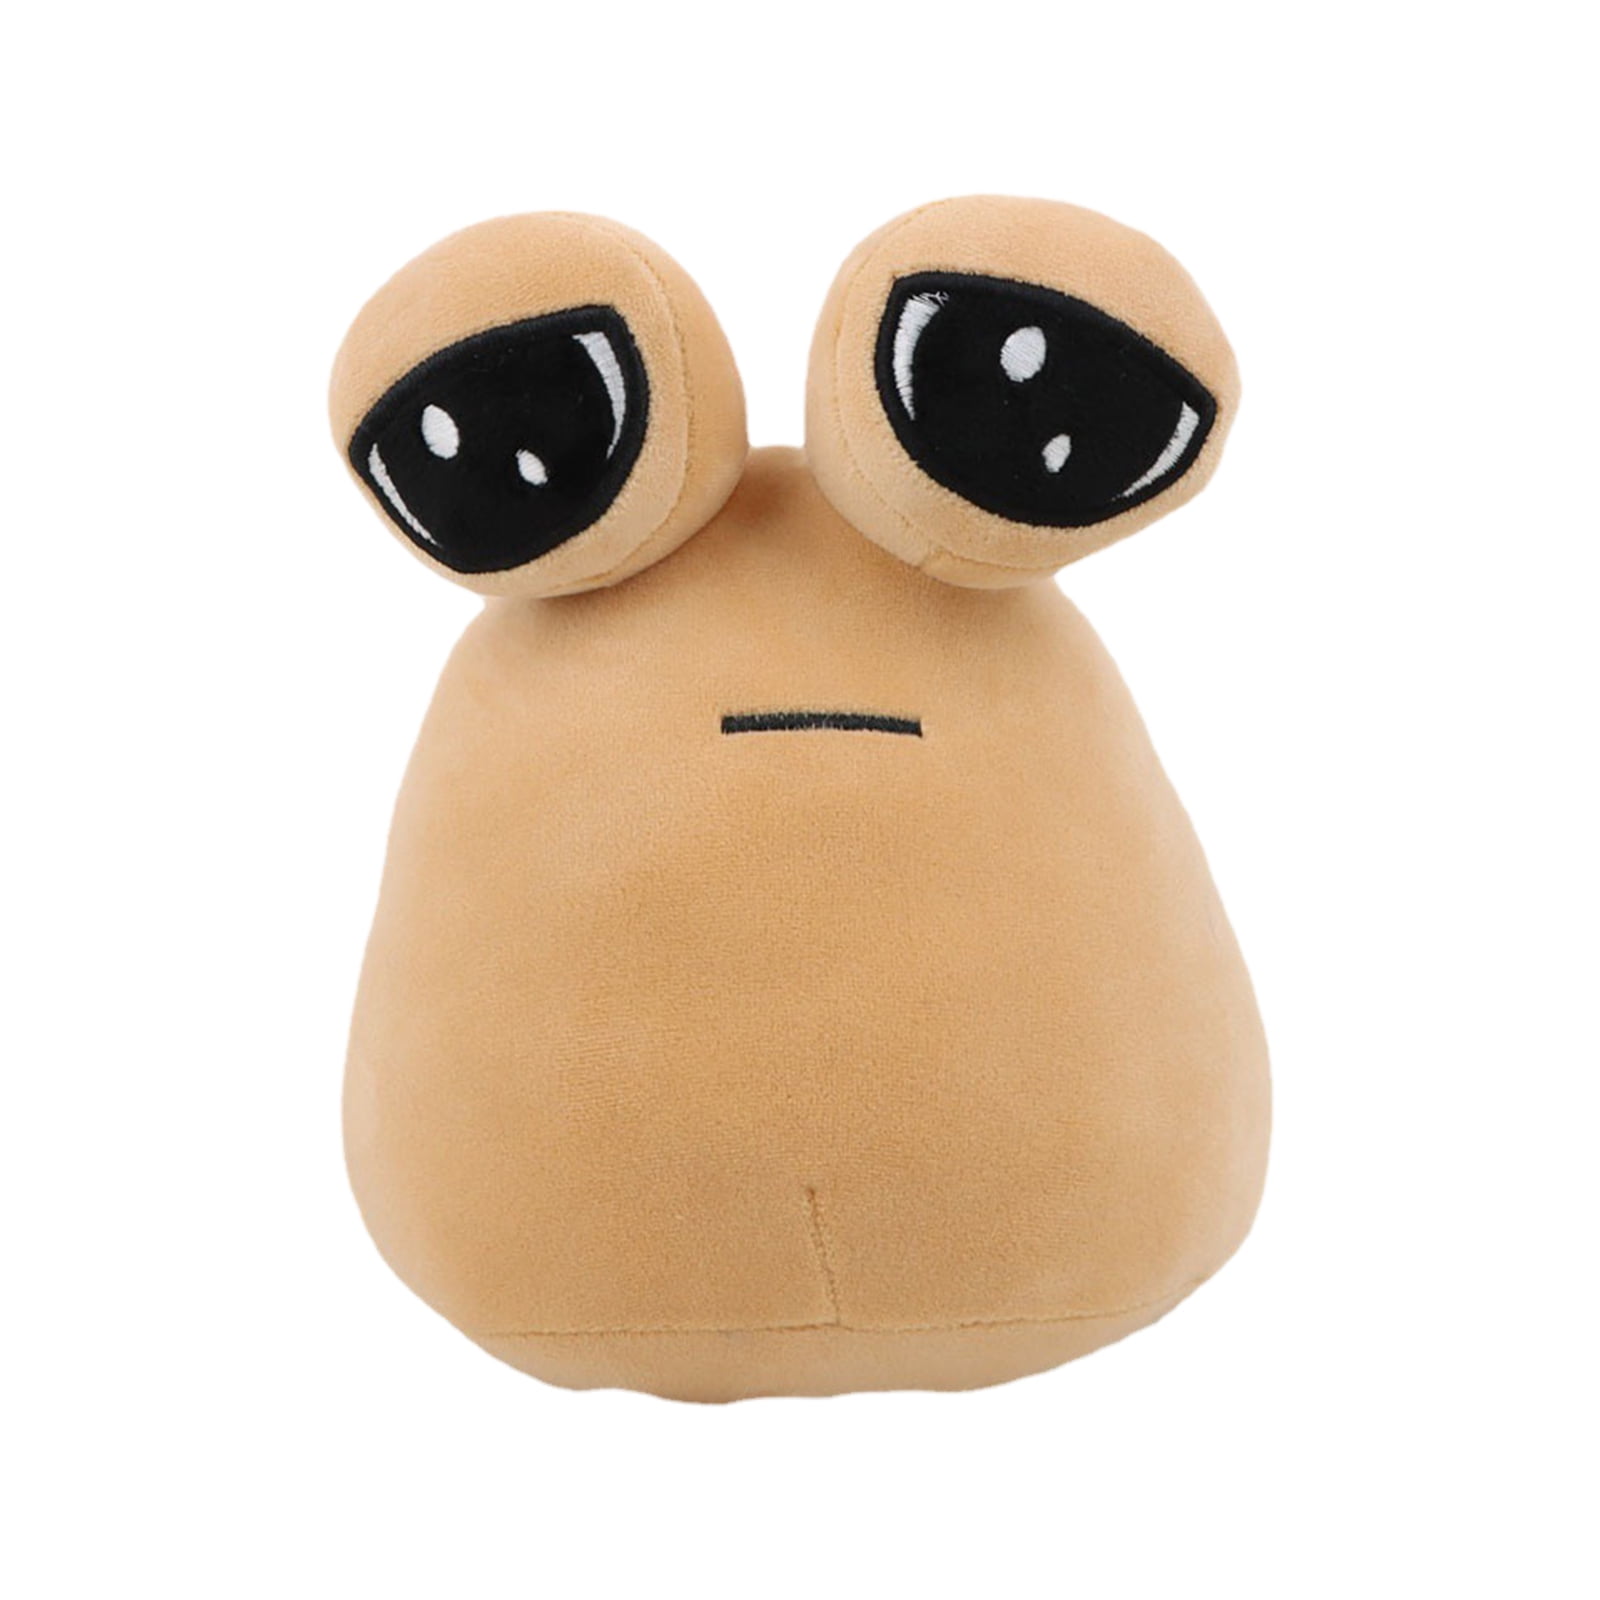 Plush Toy My Pet Alien Pou Plush Toy Furdiburb Emotion Alien Plushie  Stuffed Animal Pou Doll